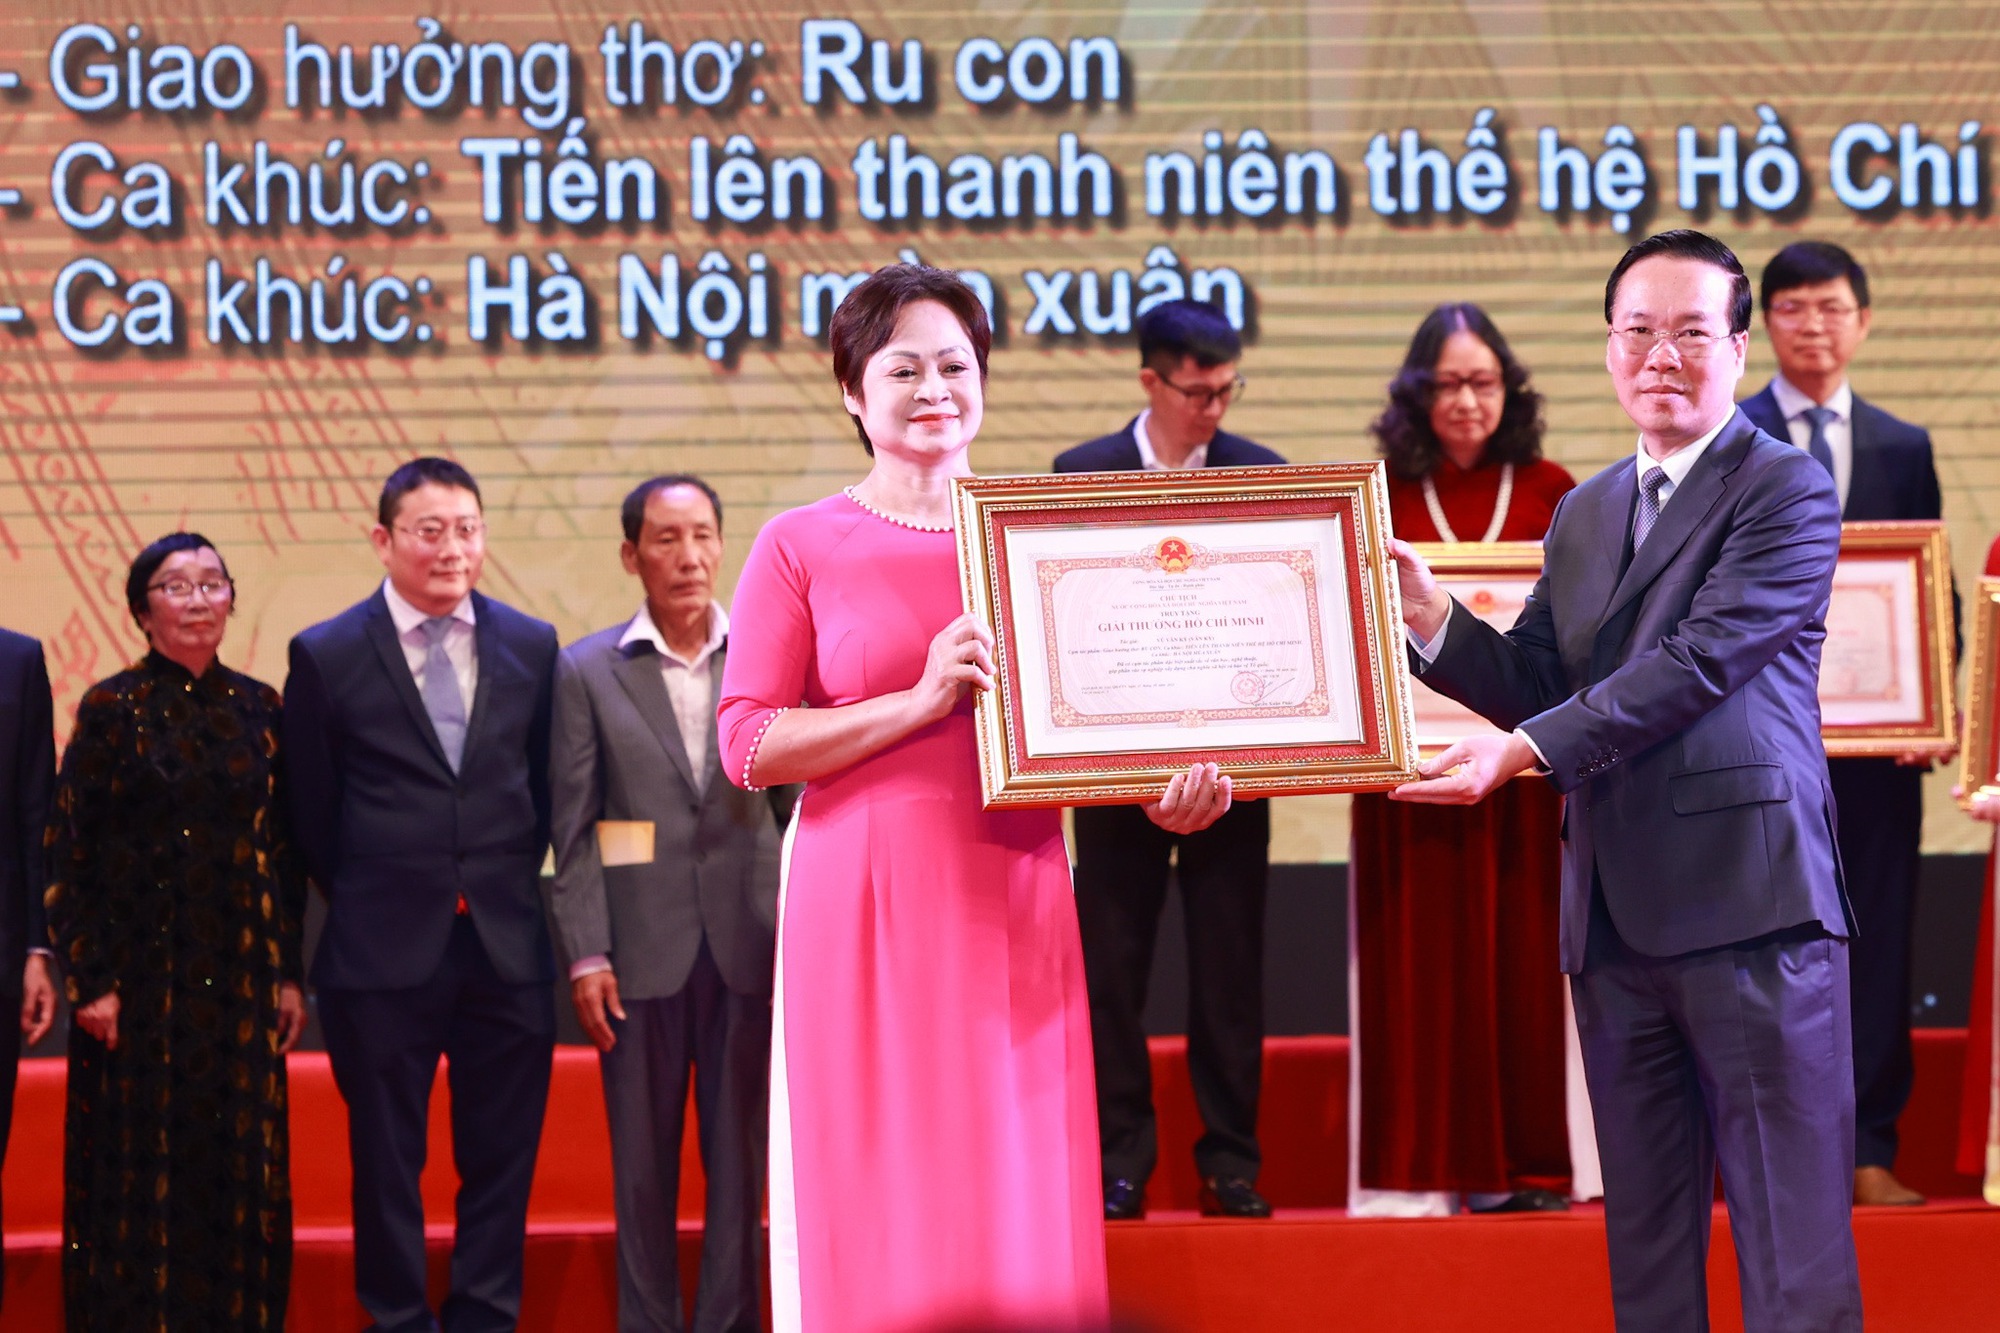 Nhạc sĩ Hồng Đăng, Văn Ký, nhà thơ Hoàng Trung Thông được truy tặng giải thưởng Hồ Chí Minh về VHNT - Ảnh 3.